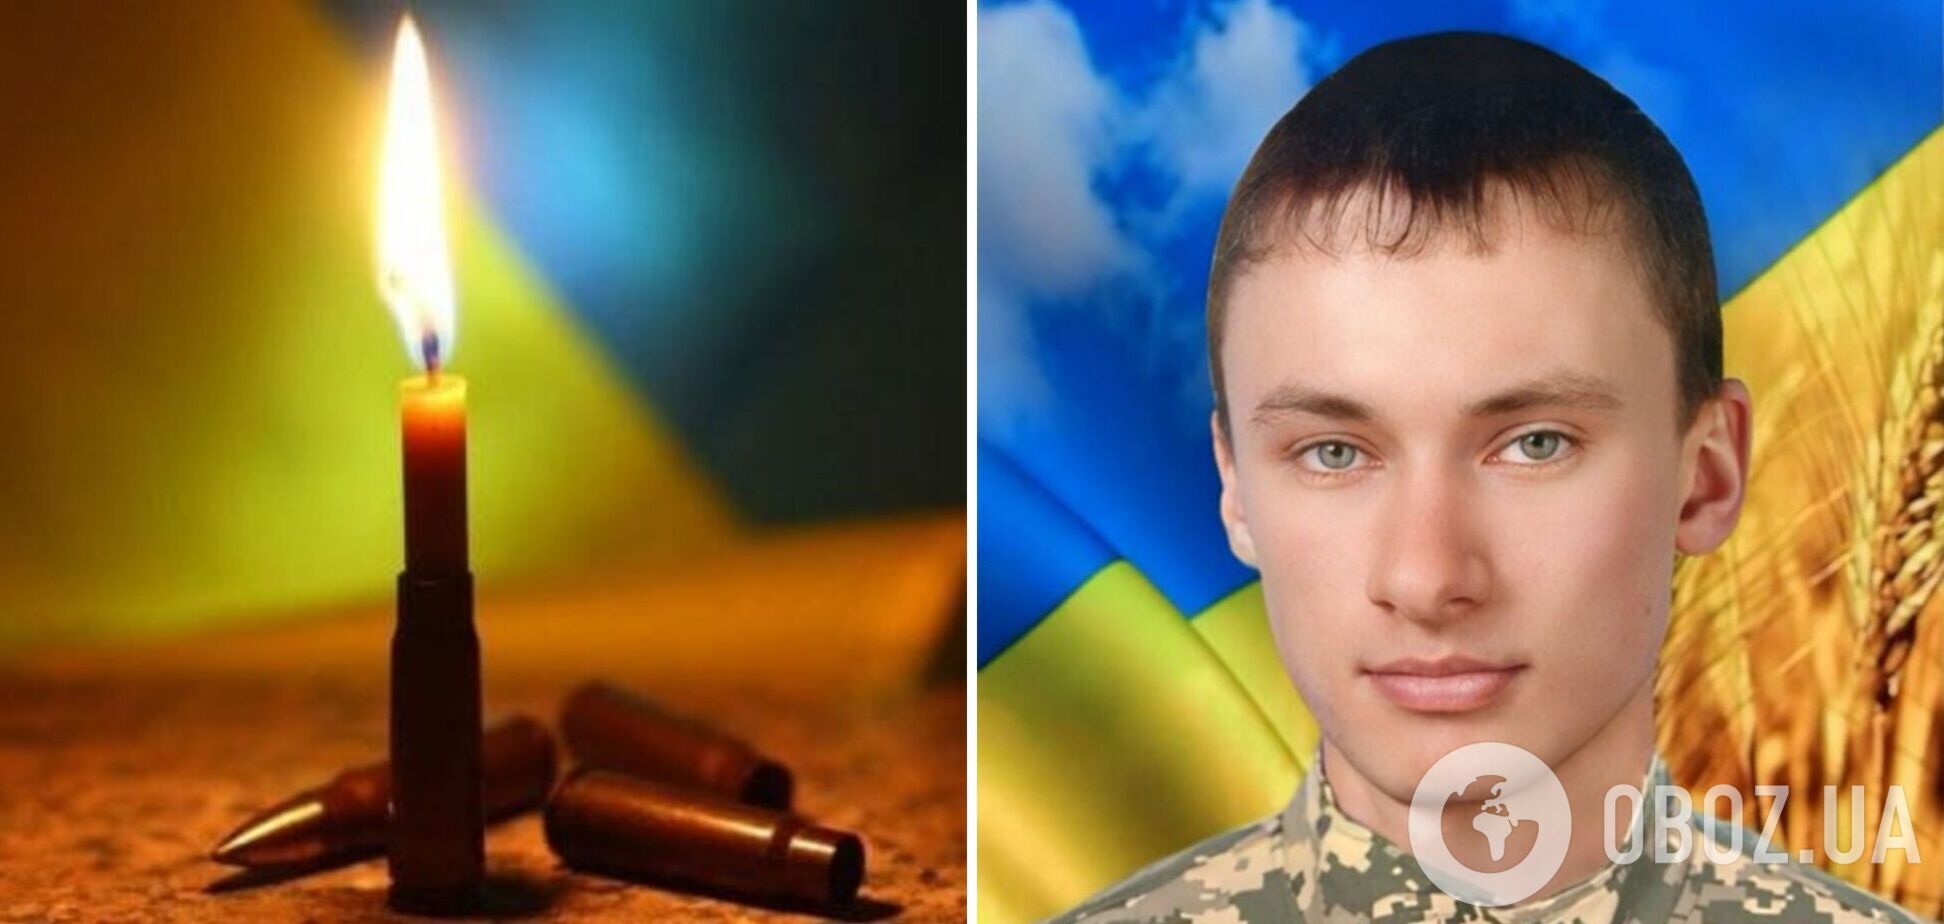 'Единственный сын в семье': в боях за Украину погиб защитник из Хмельницкой области. Фото